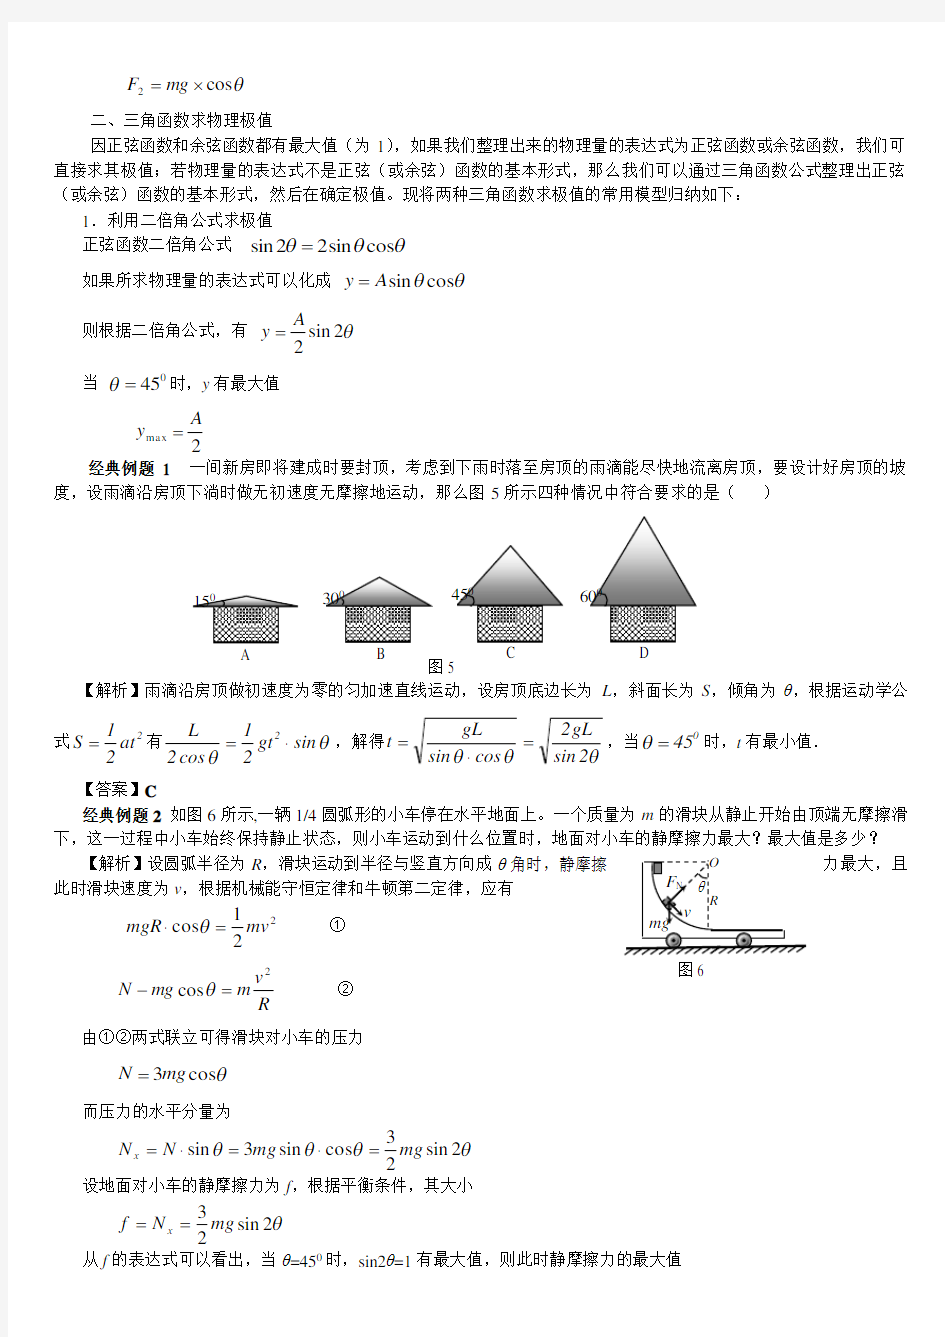 高中物理中常用的三角函数数学模型(强烈推荐)